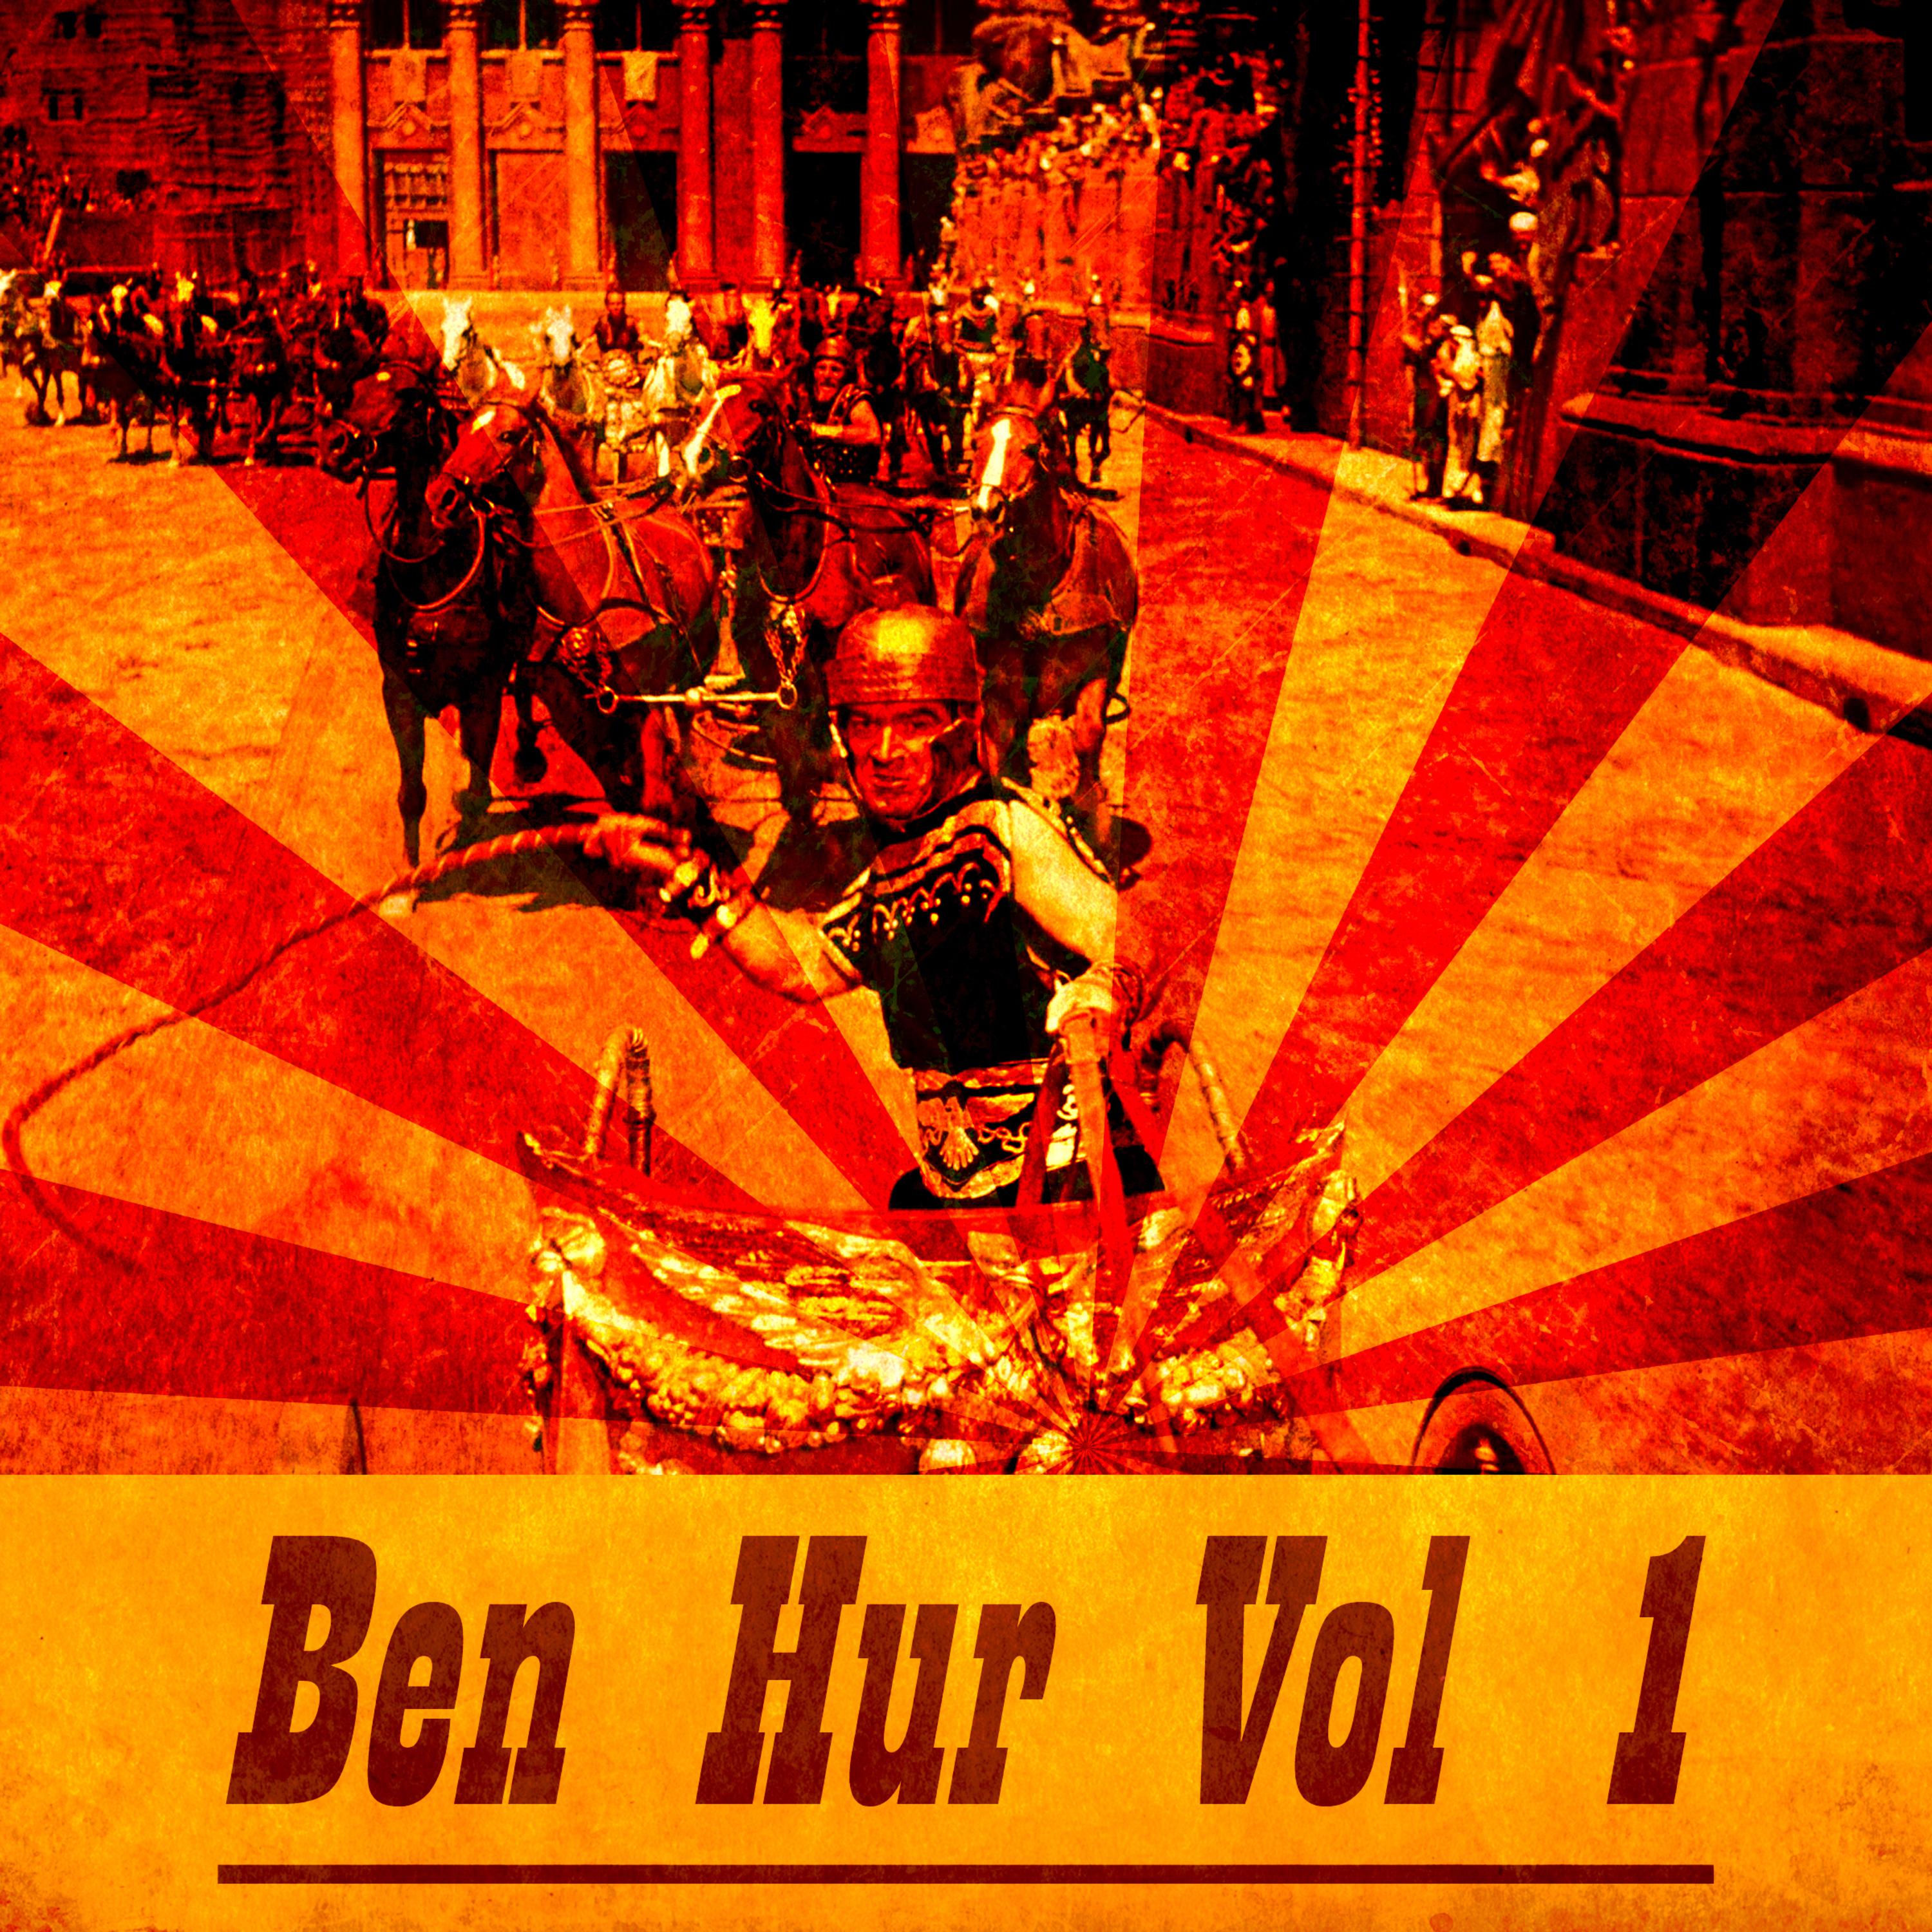 Ben Hur Vol. 1